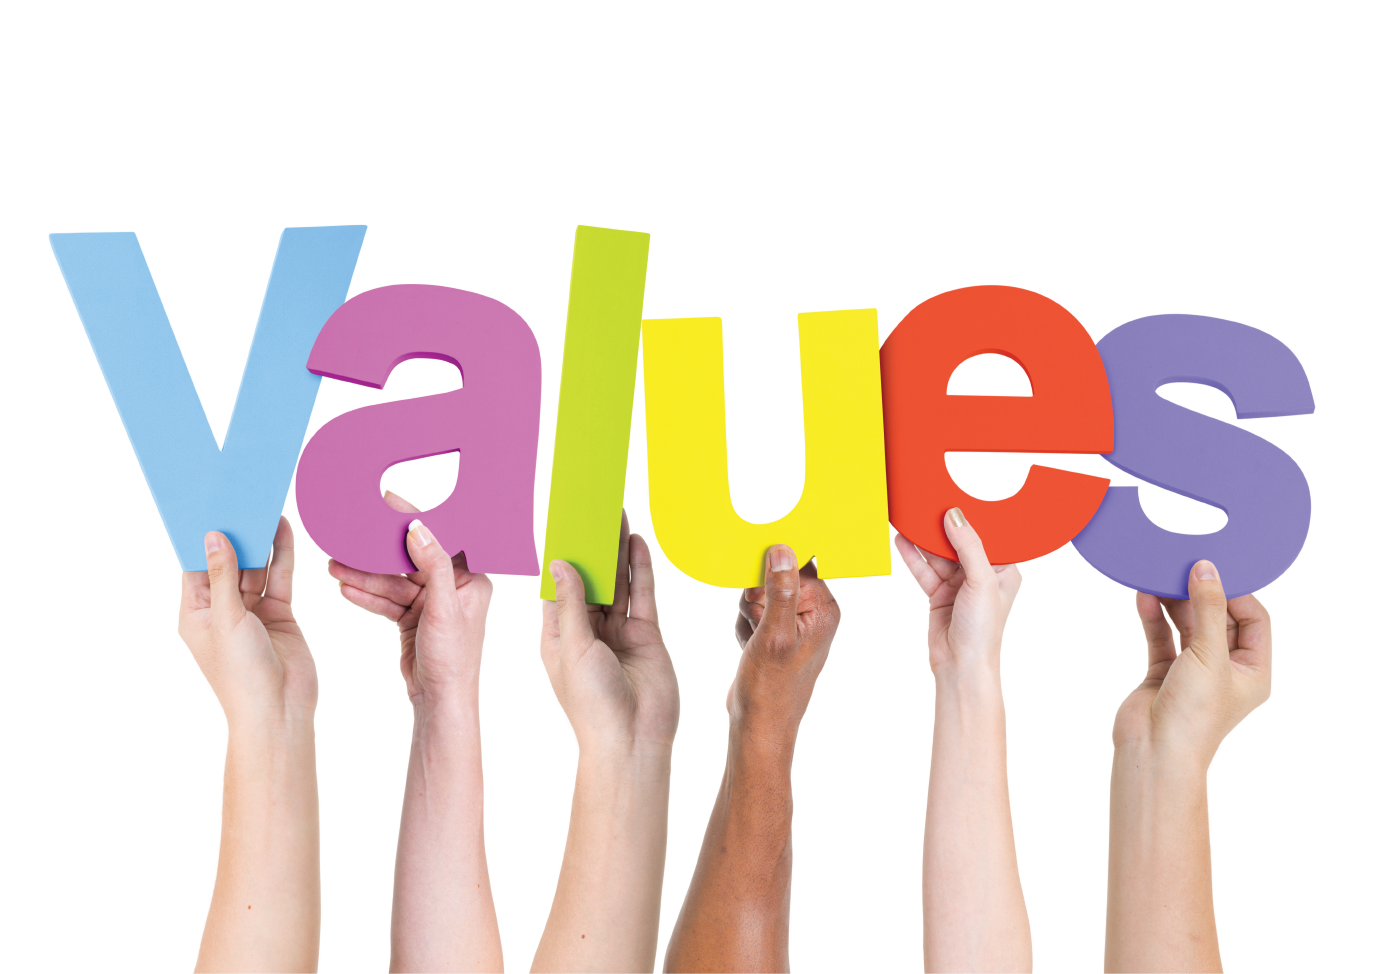 Values topic. Values картинки. Personal value. Values компании картинка. Values and Lifestyles картинка.